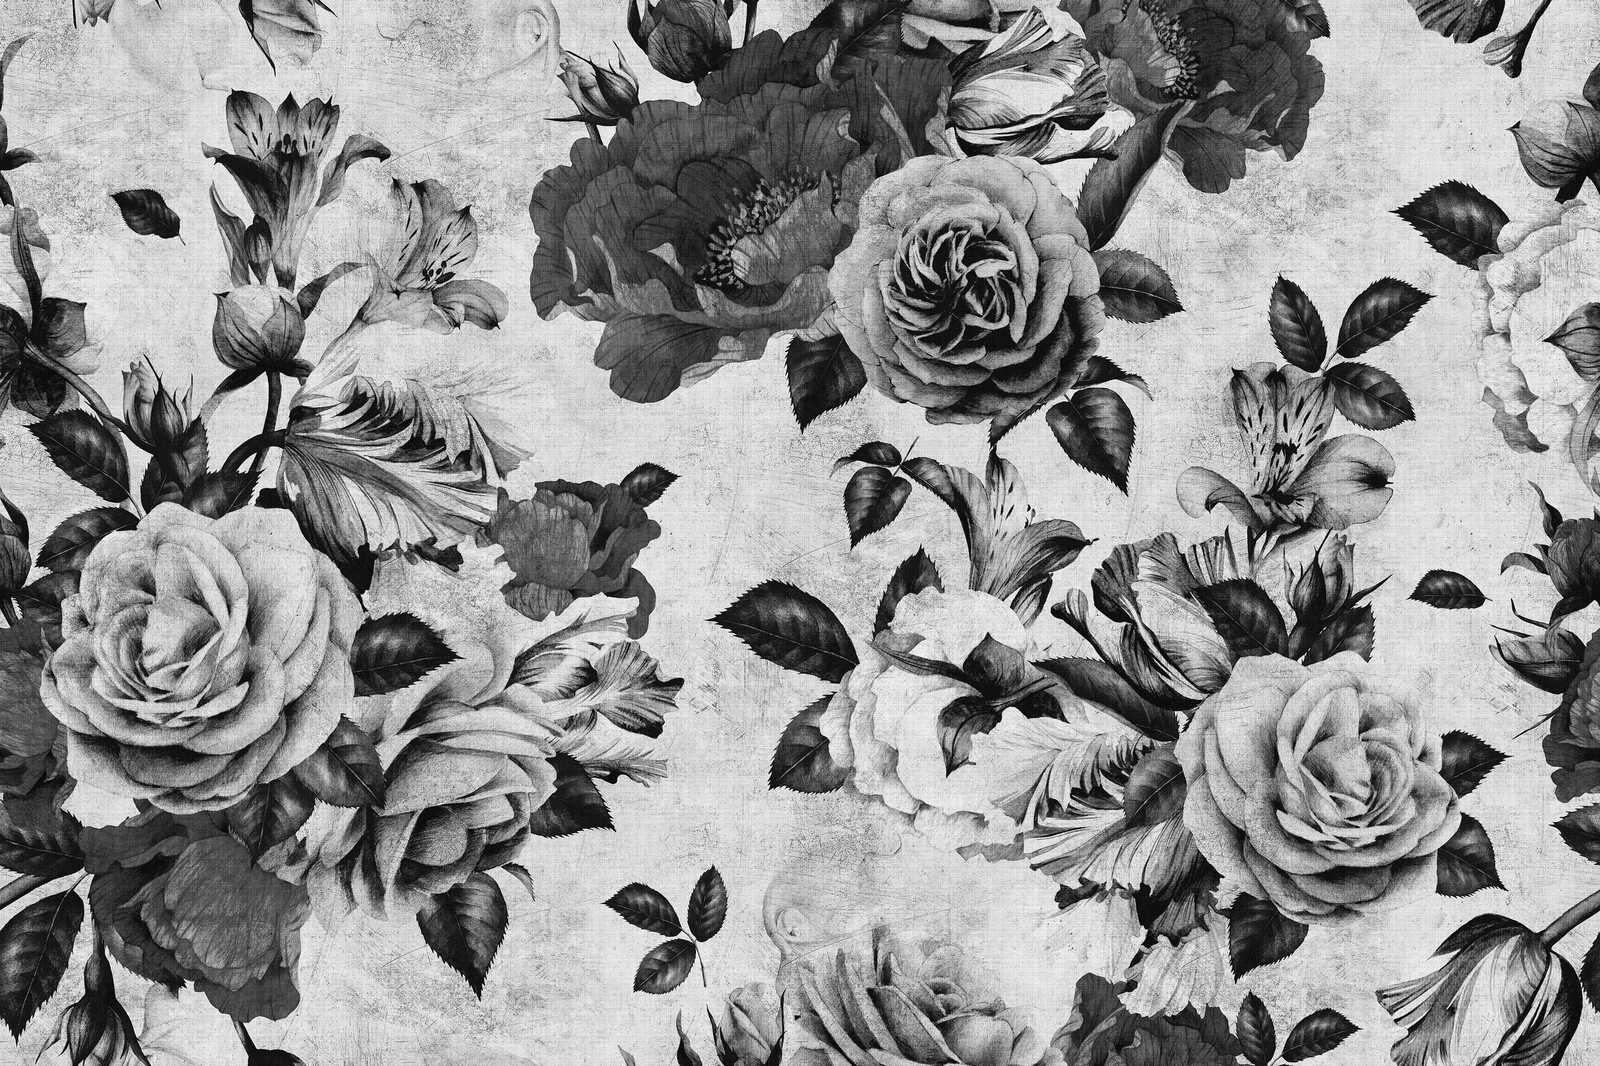             Spaanse roos 1 - Rozen canvas schilderij met zwarte en witte bloemen - 0,90 m x 0,60 m
        